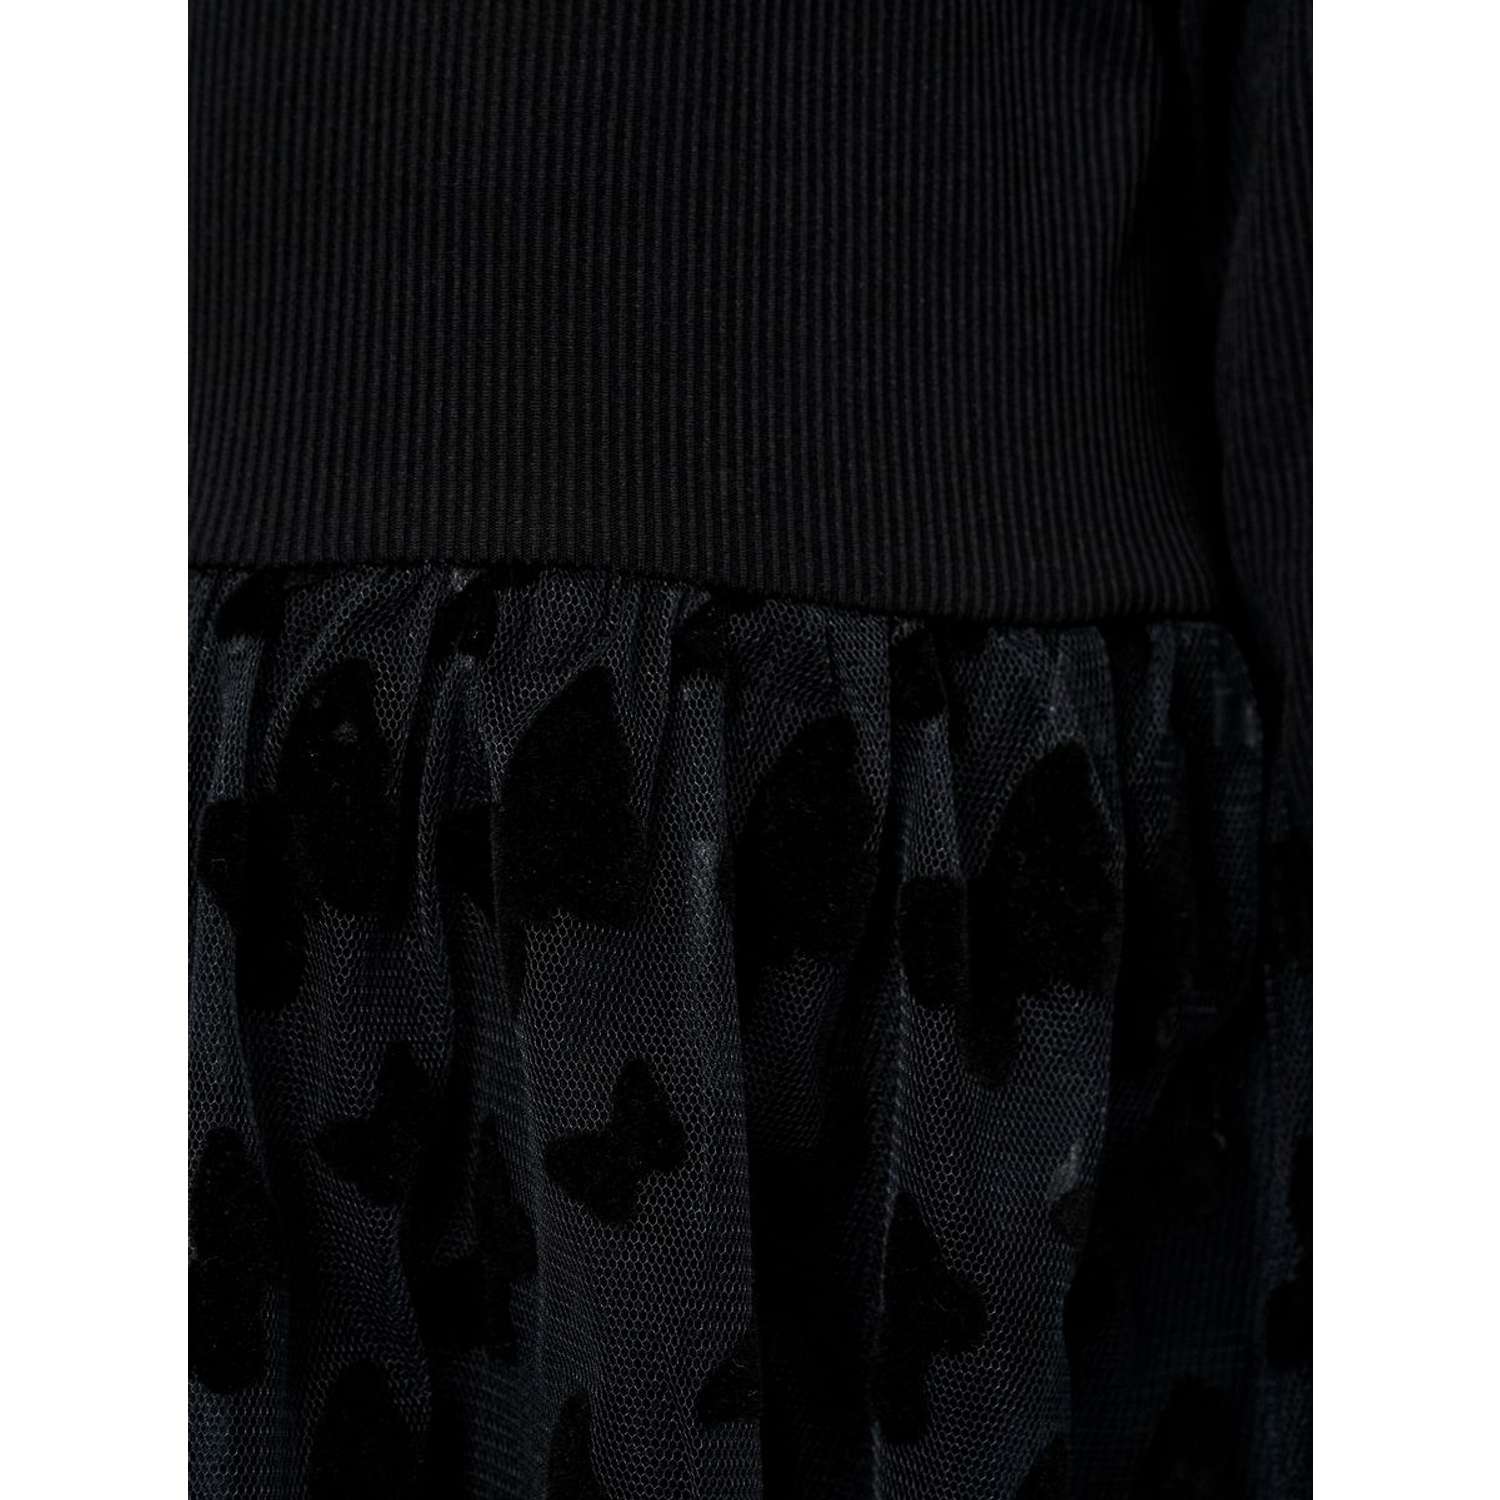 Платье Katlen БР-Пл-009.1/Черный - фото 4